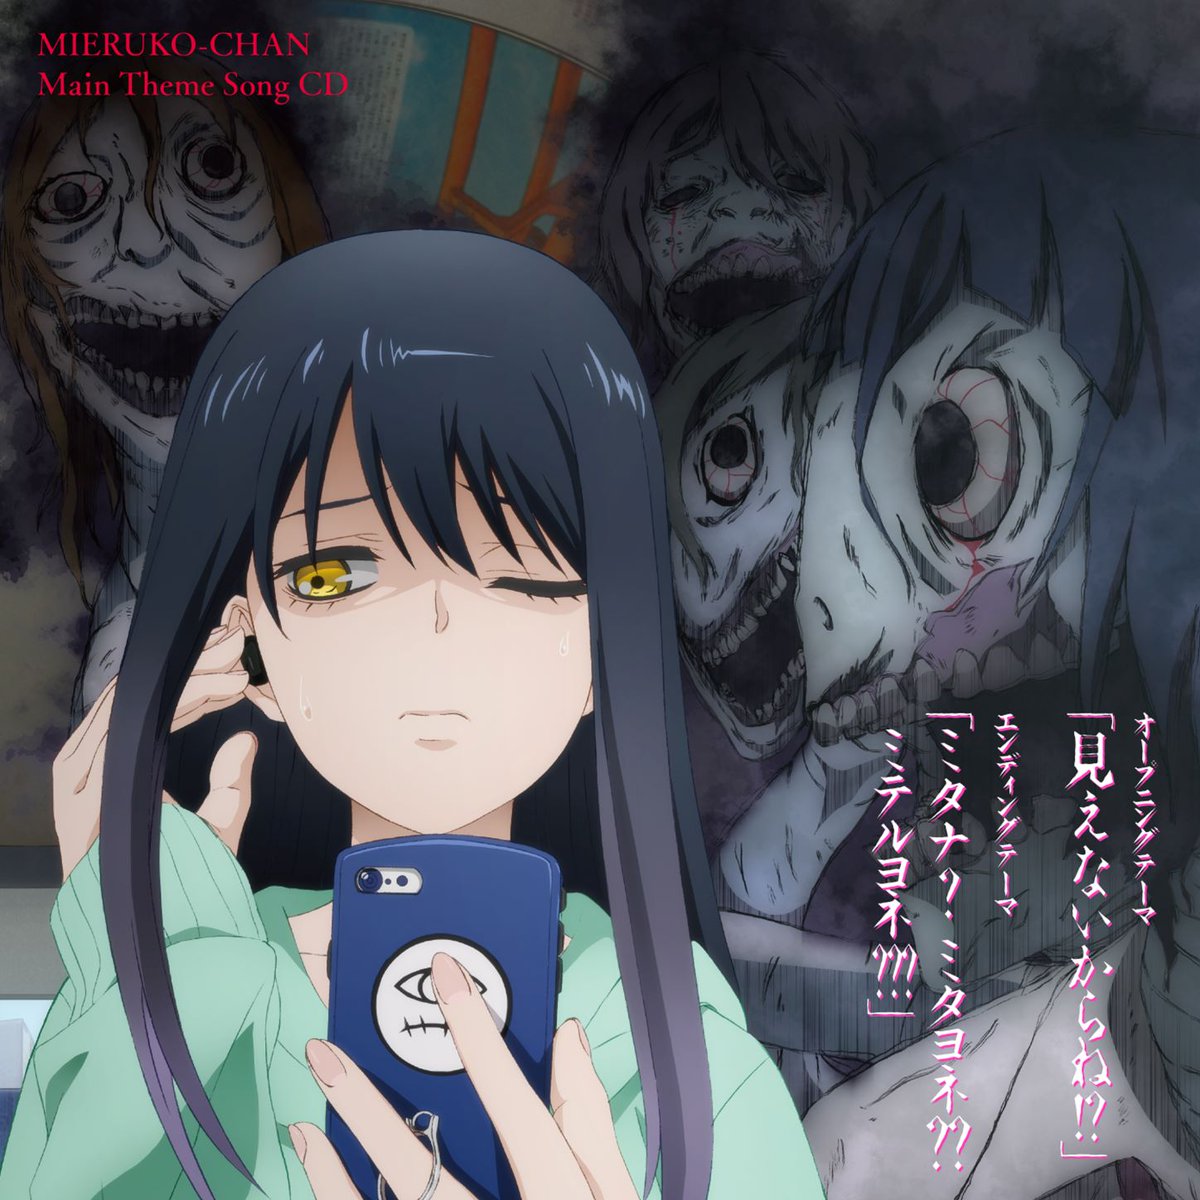 Cover art for『Miko Yotsuya (Sora Amamiya) - Mita na? Mita yo ne?? Miteru yo ne???』from the release『Mieruko-chan Main Theme Song CD』